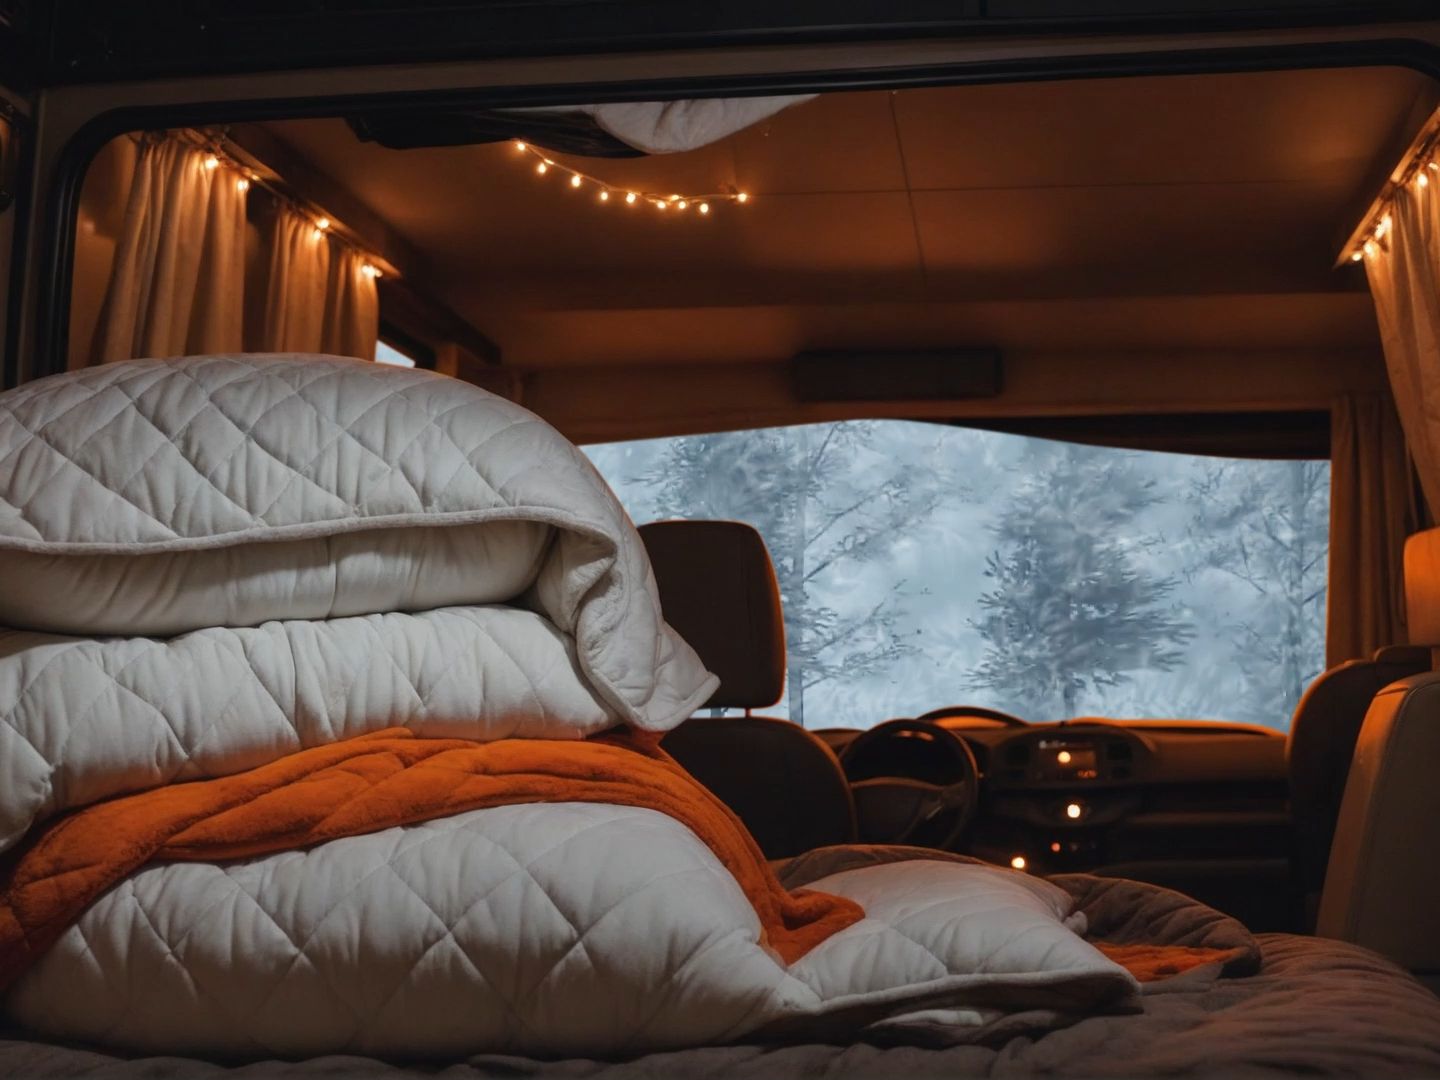 旅途遇到暴风雪，在舒适房车里放松入睡吧！风雪声